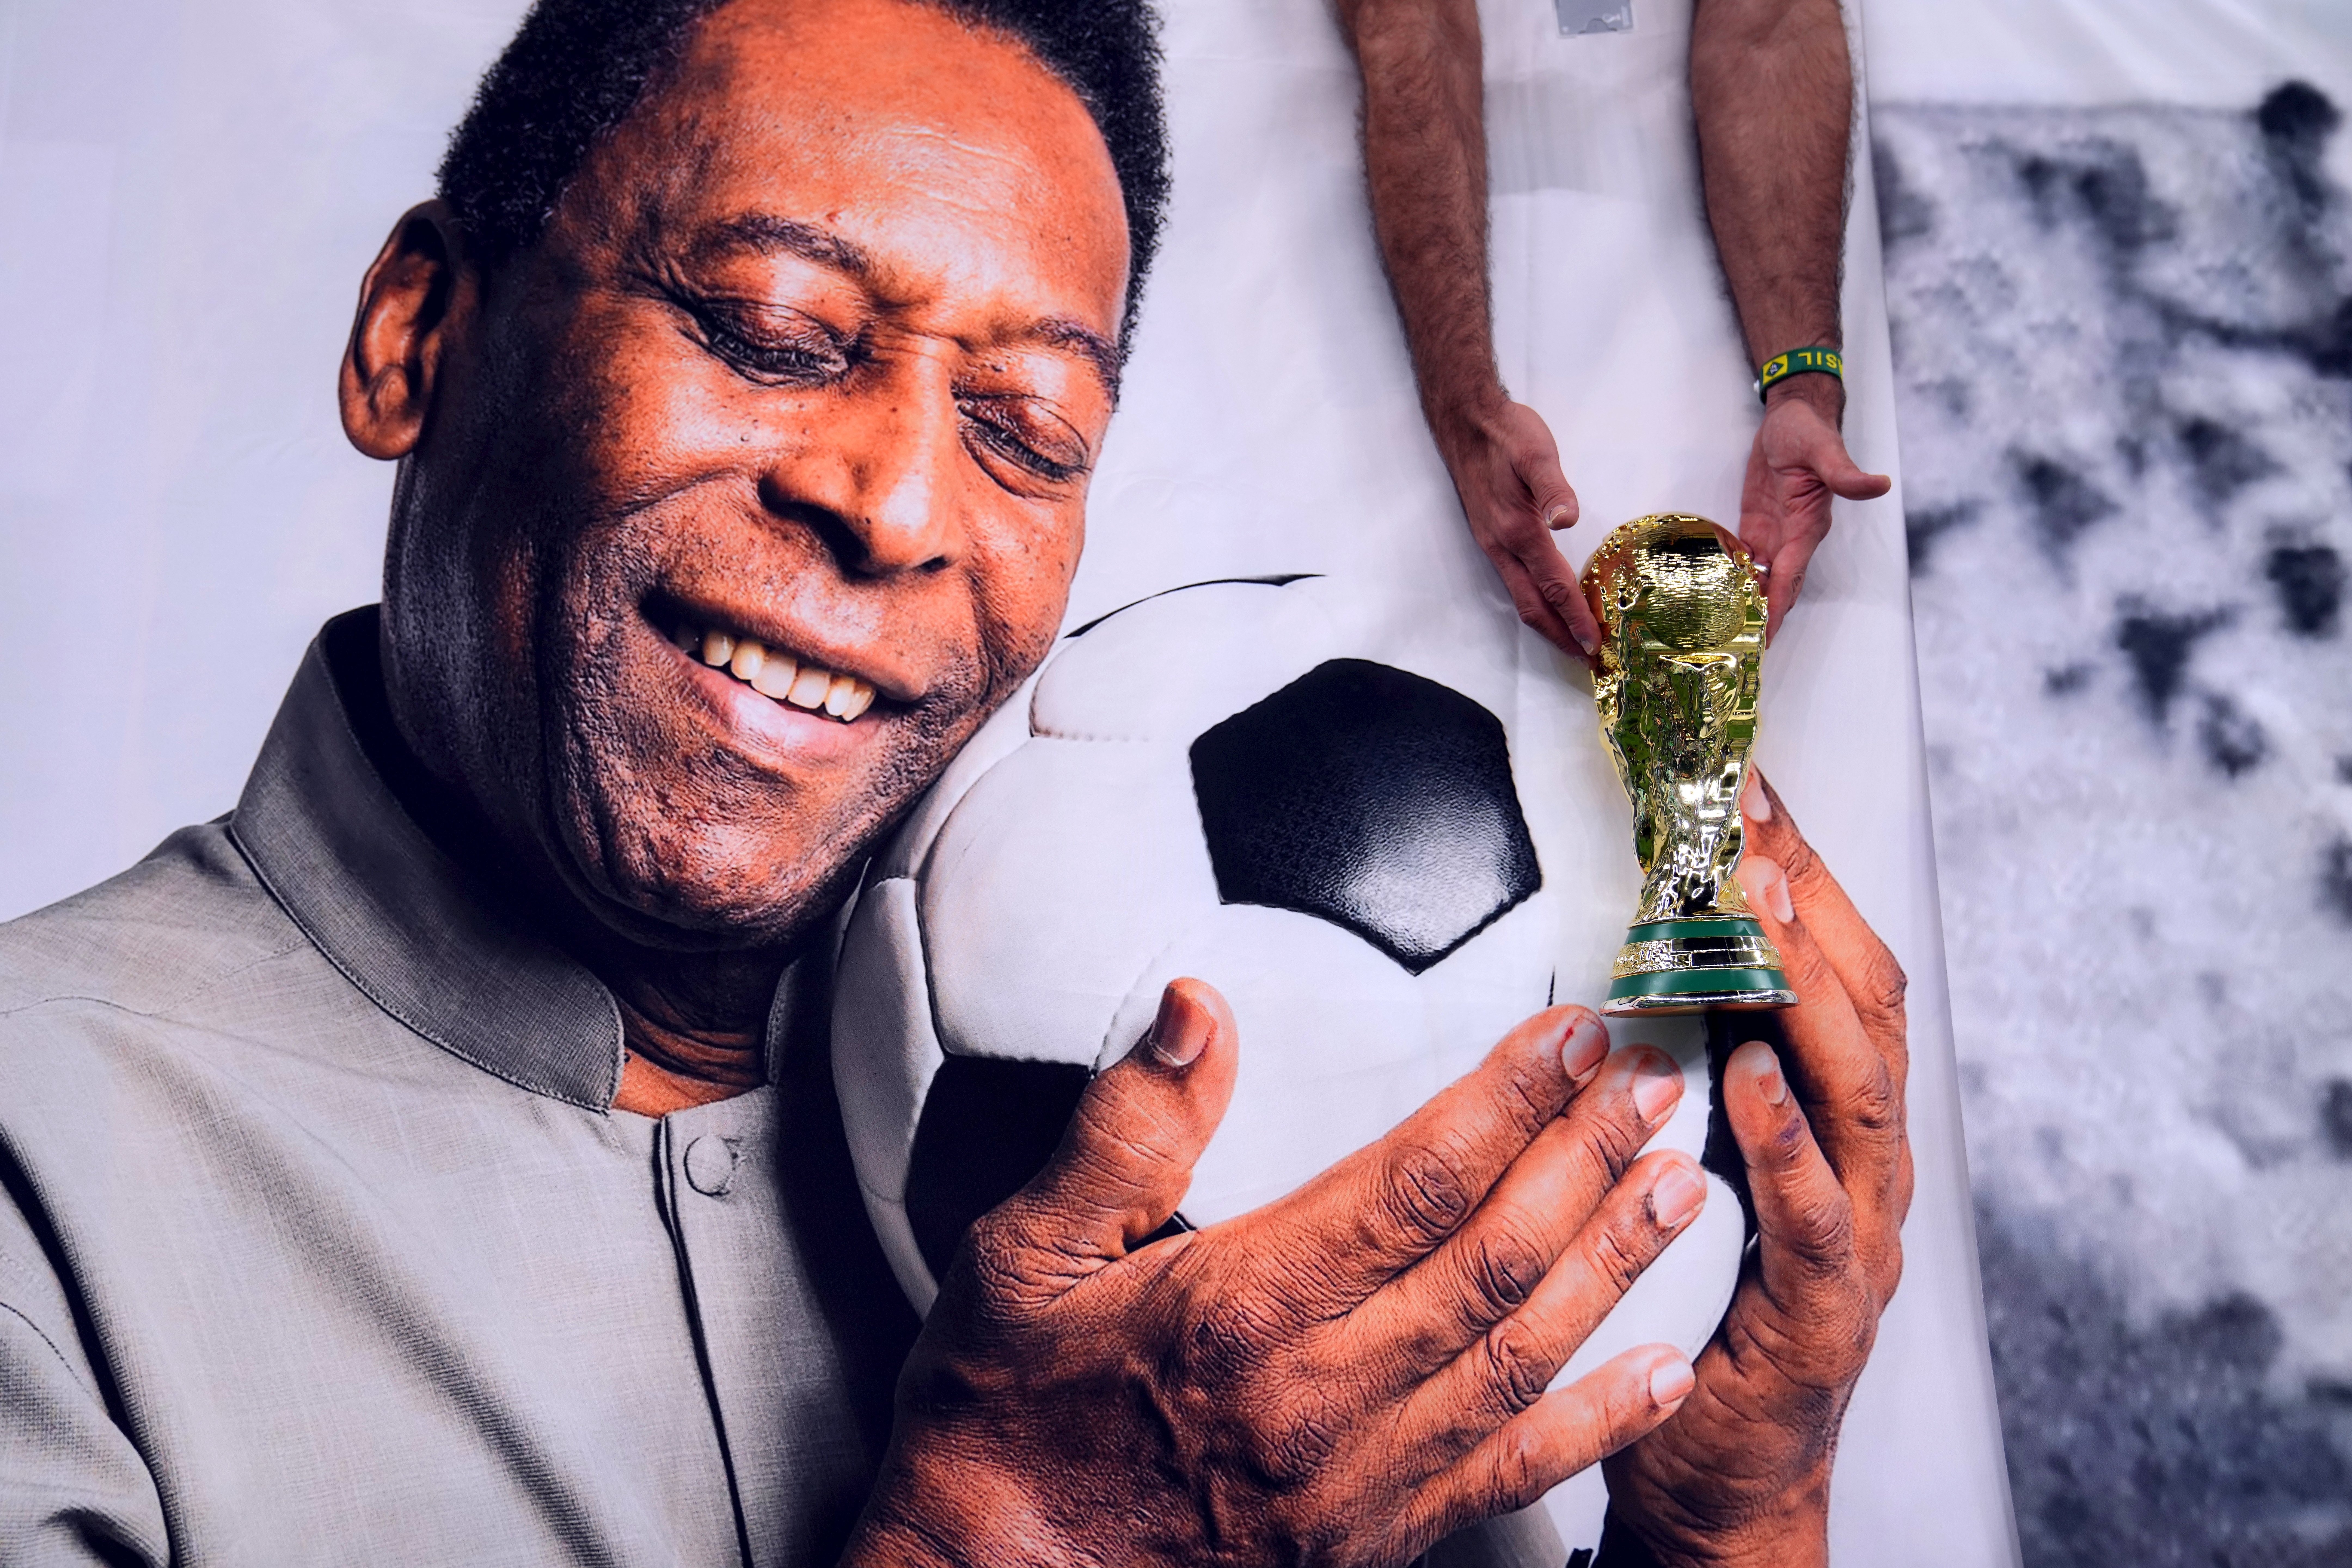 La leyenda de 'O Rei' Pelé, el astro mágico que llevó el fútbol a una nueva dimensión